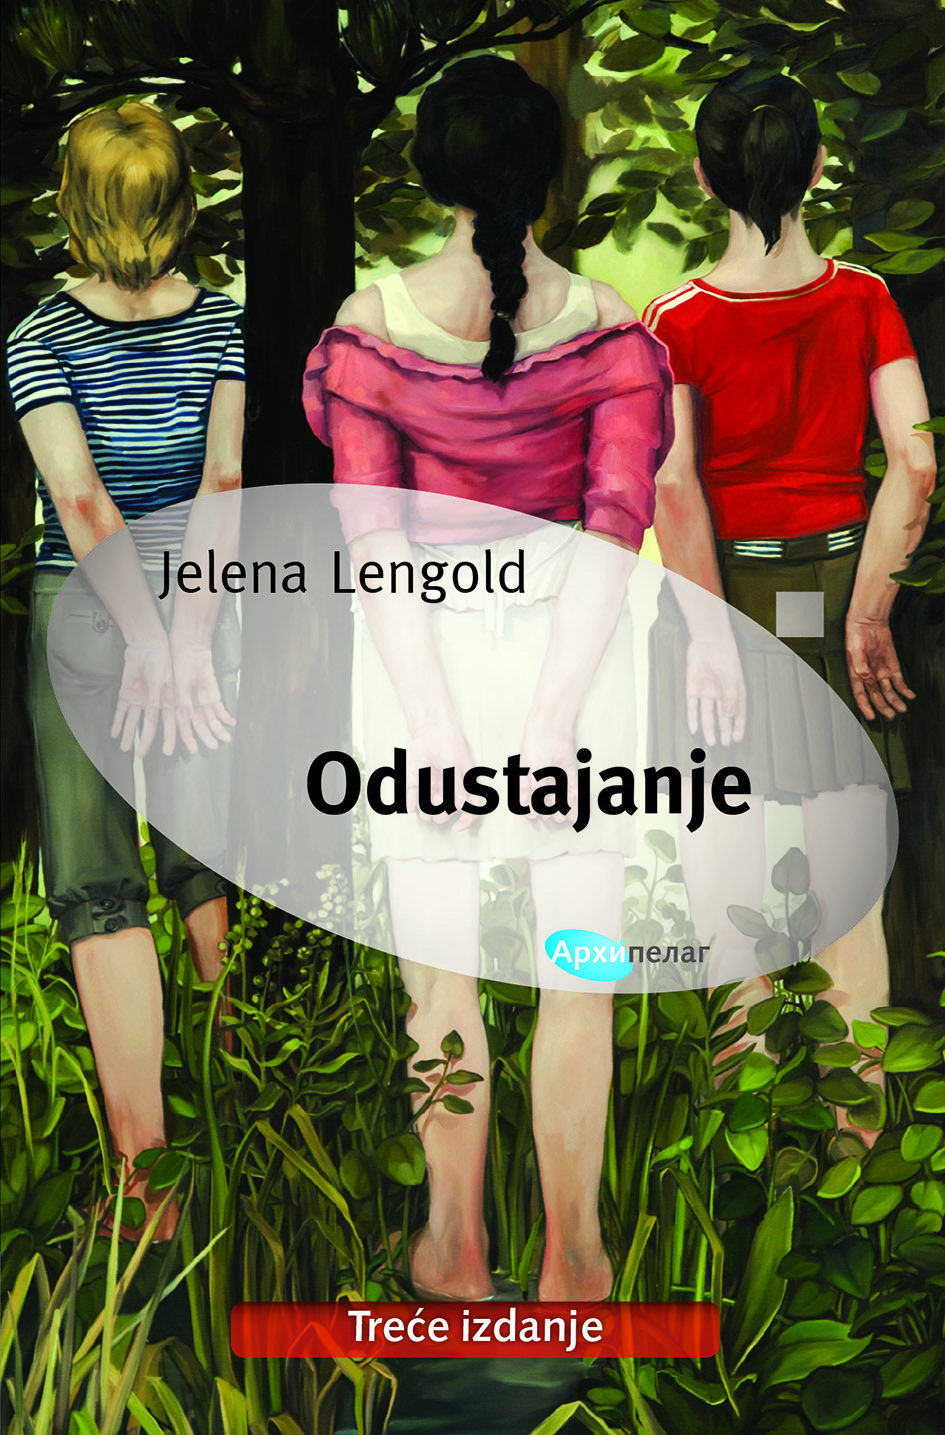 Treće izdanje romana Jelene Lengold – Odustajanje